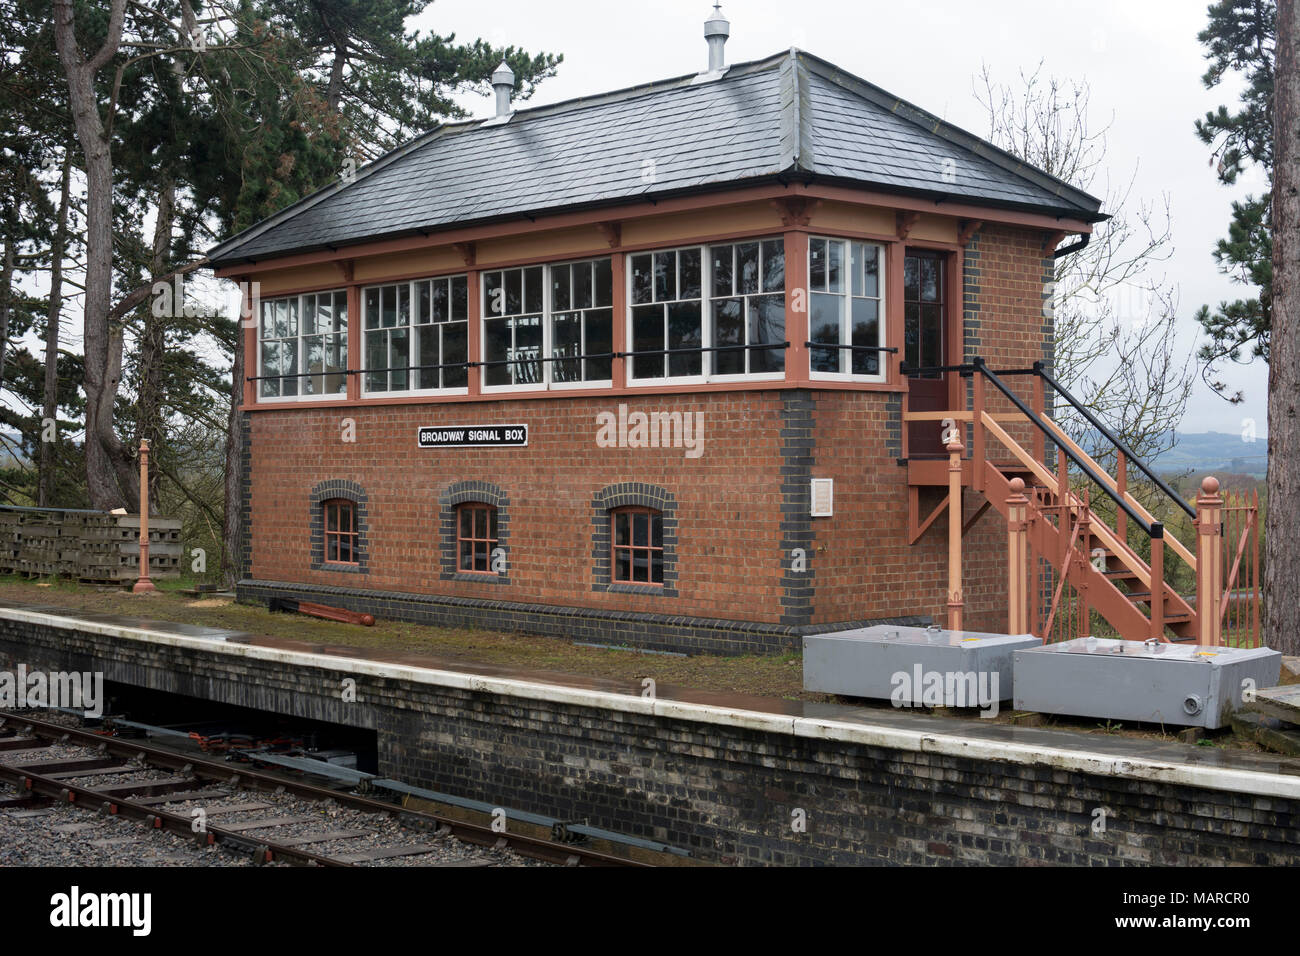 Broadway signal box, Gloucestershire and Warwickshire Steam Railway, Broadway, Worcestershire, UK Stock Photo